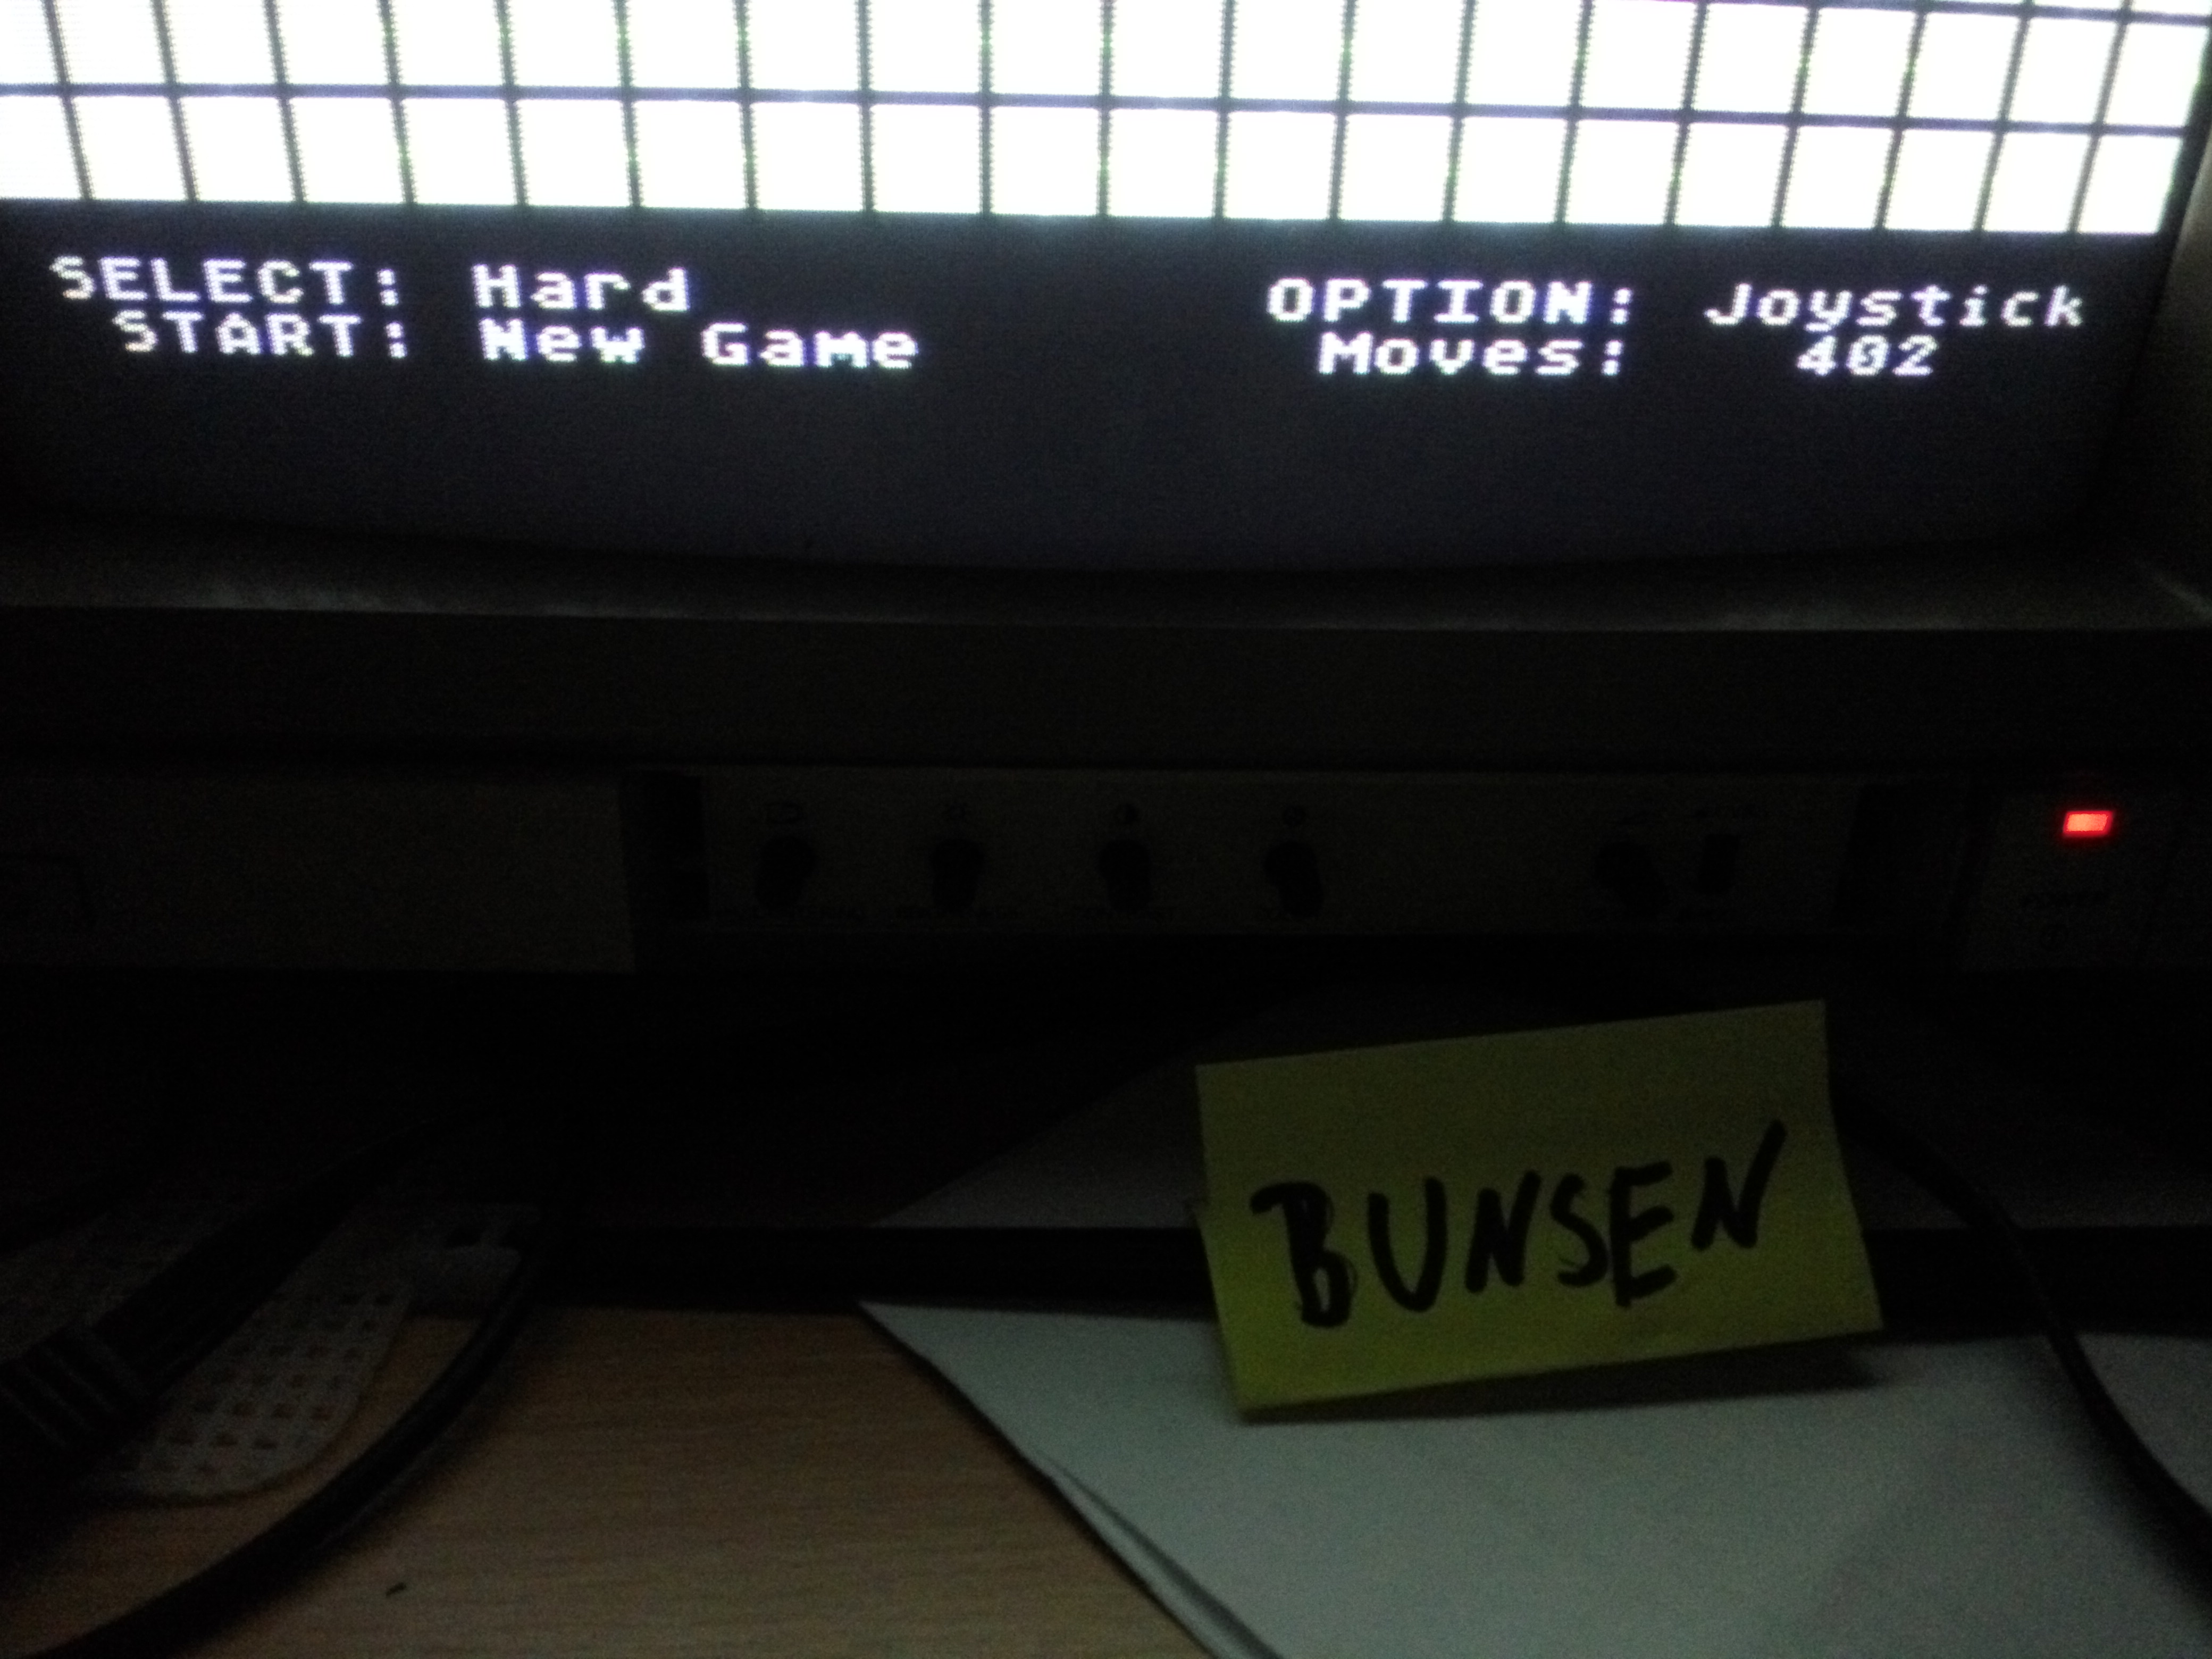 Bunsen: AtariNet 1.0 [Hard] (Atari 400/800/XL/XE) 402 points on 2016-10-07 08:10:48